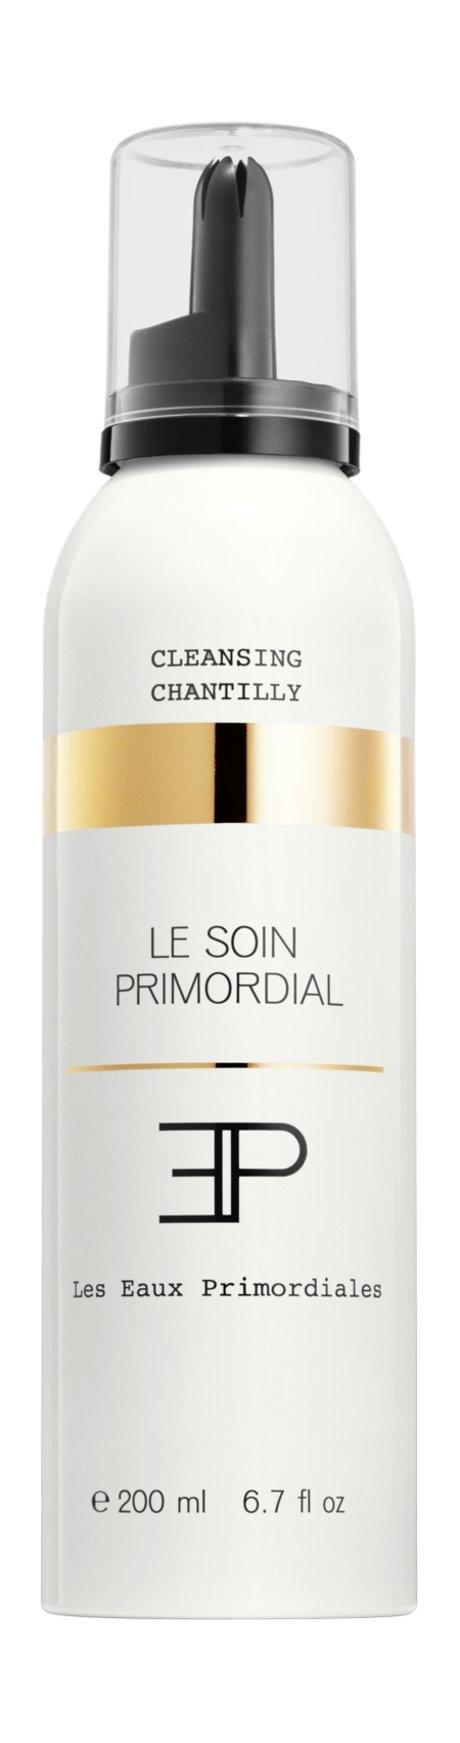 Les Eaux Primordiales Le Soin Primordial Cleansing Chantilly